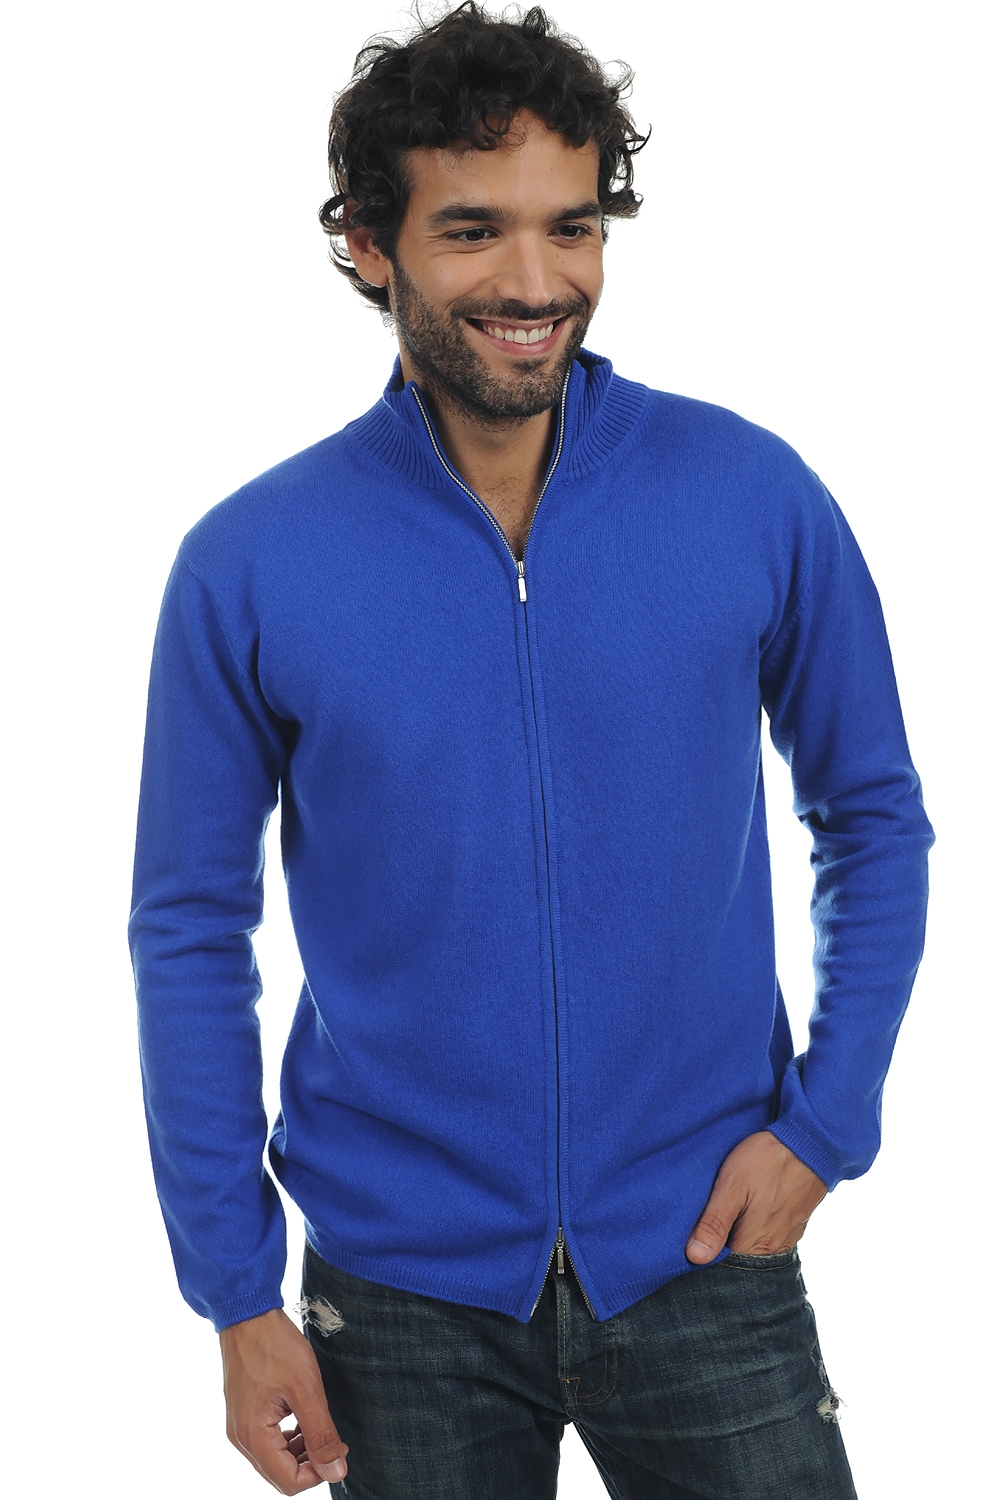 Cachemire pull homme zip capuche elton bleu lapis 3xl